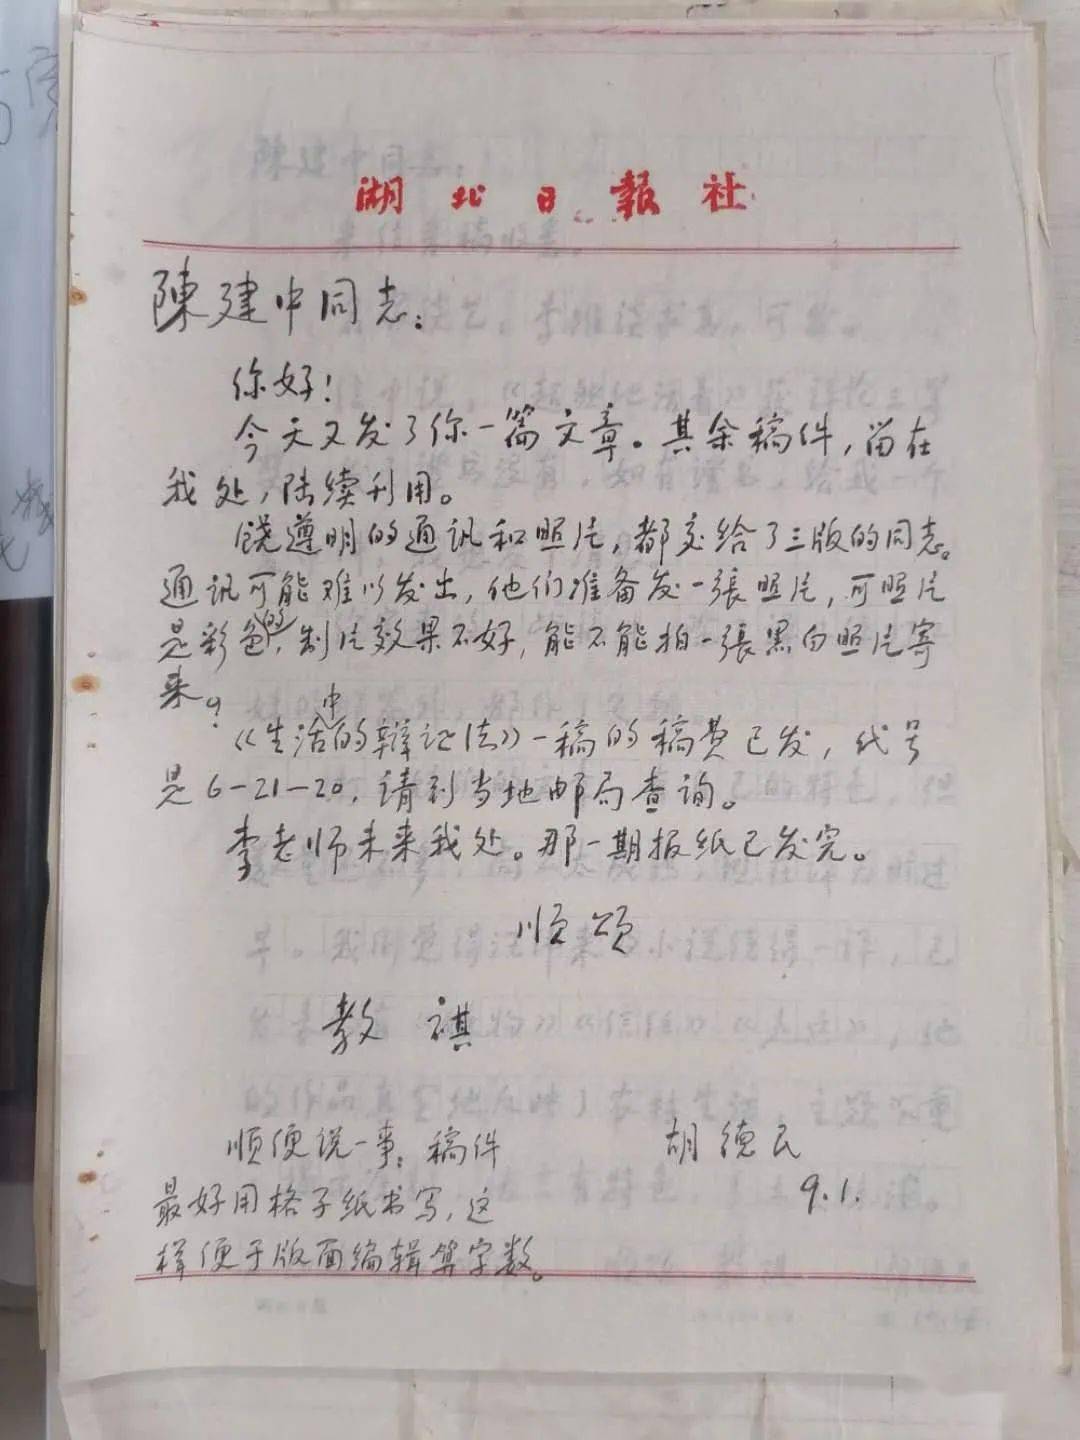 (1993年)9月1日胡德民教祺顺颂顺便说一事:稿件最好用格子纸书写,这样